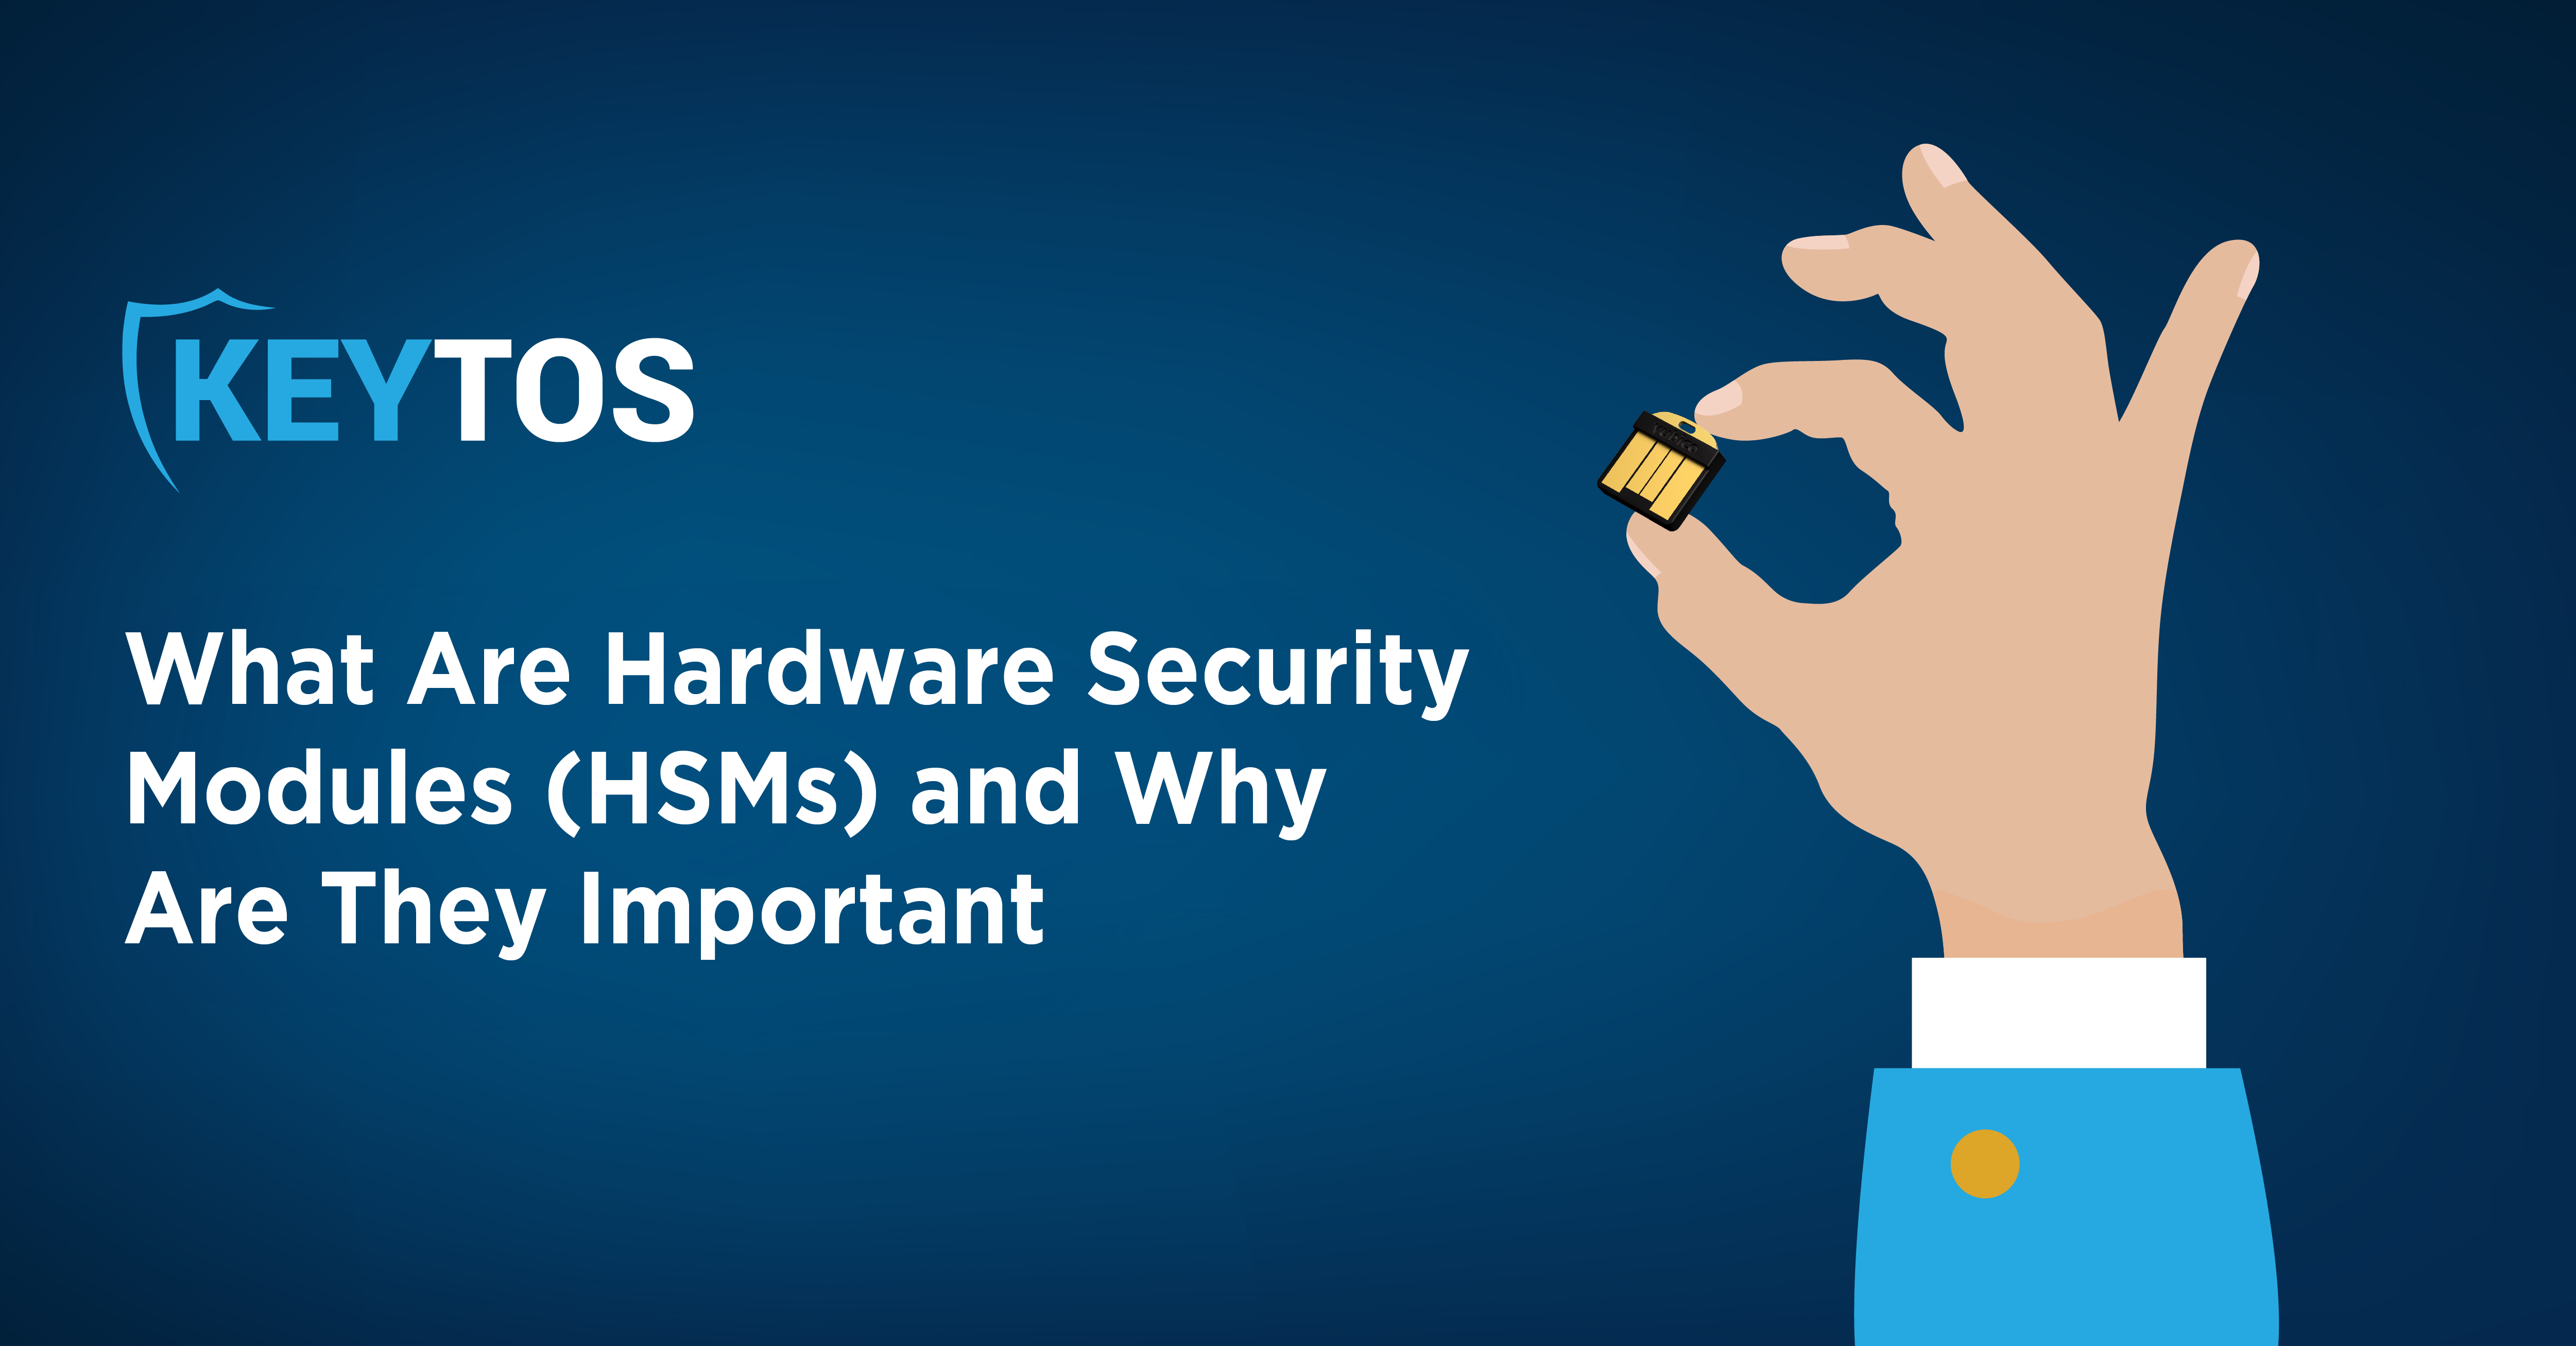 ¿Qué son los HSM y Por Qué son importantes?